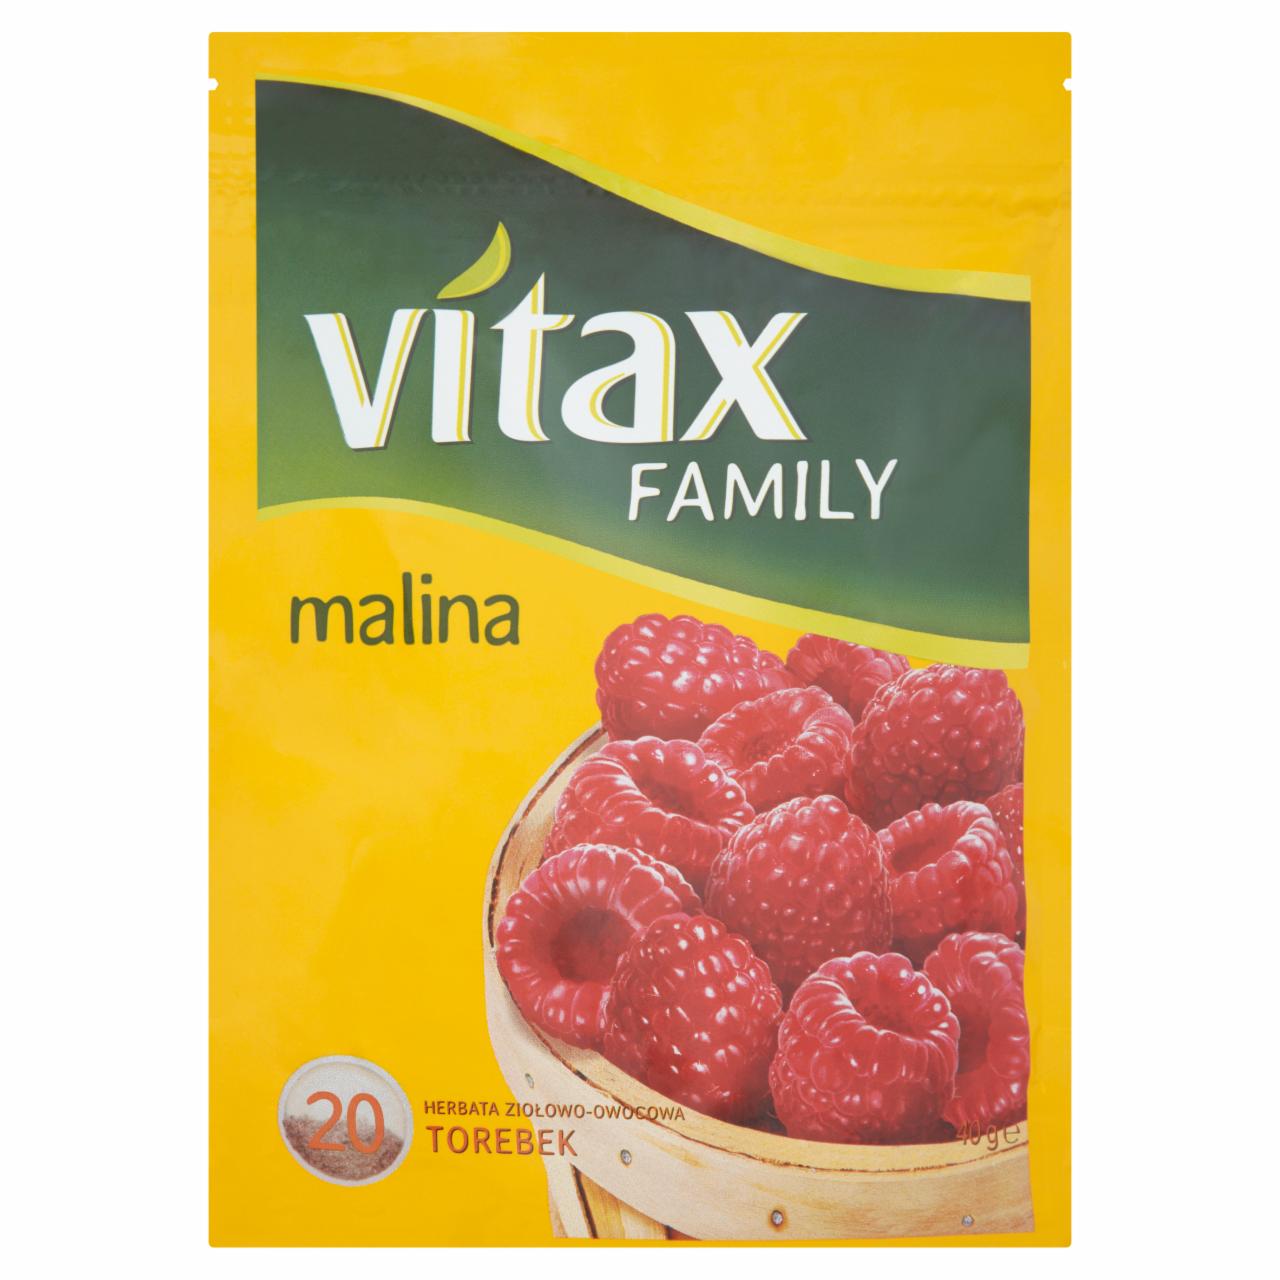 Zdjęcia - Vitax Family malina Herbata ziołowo-owocowa 40 g (20 torebek)